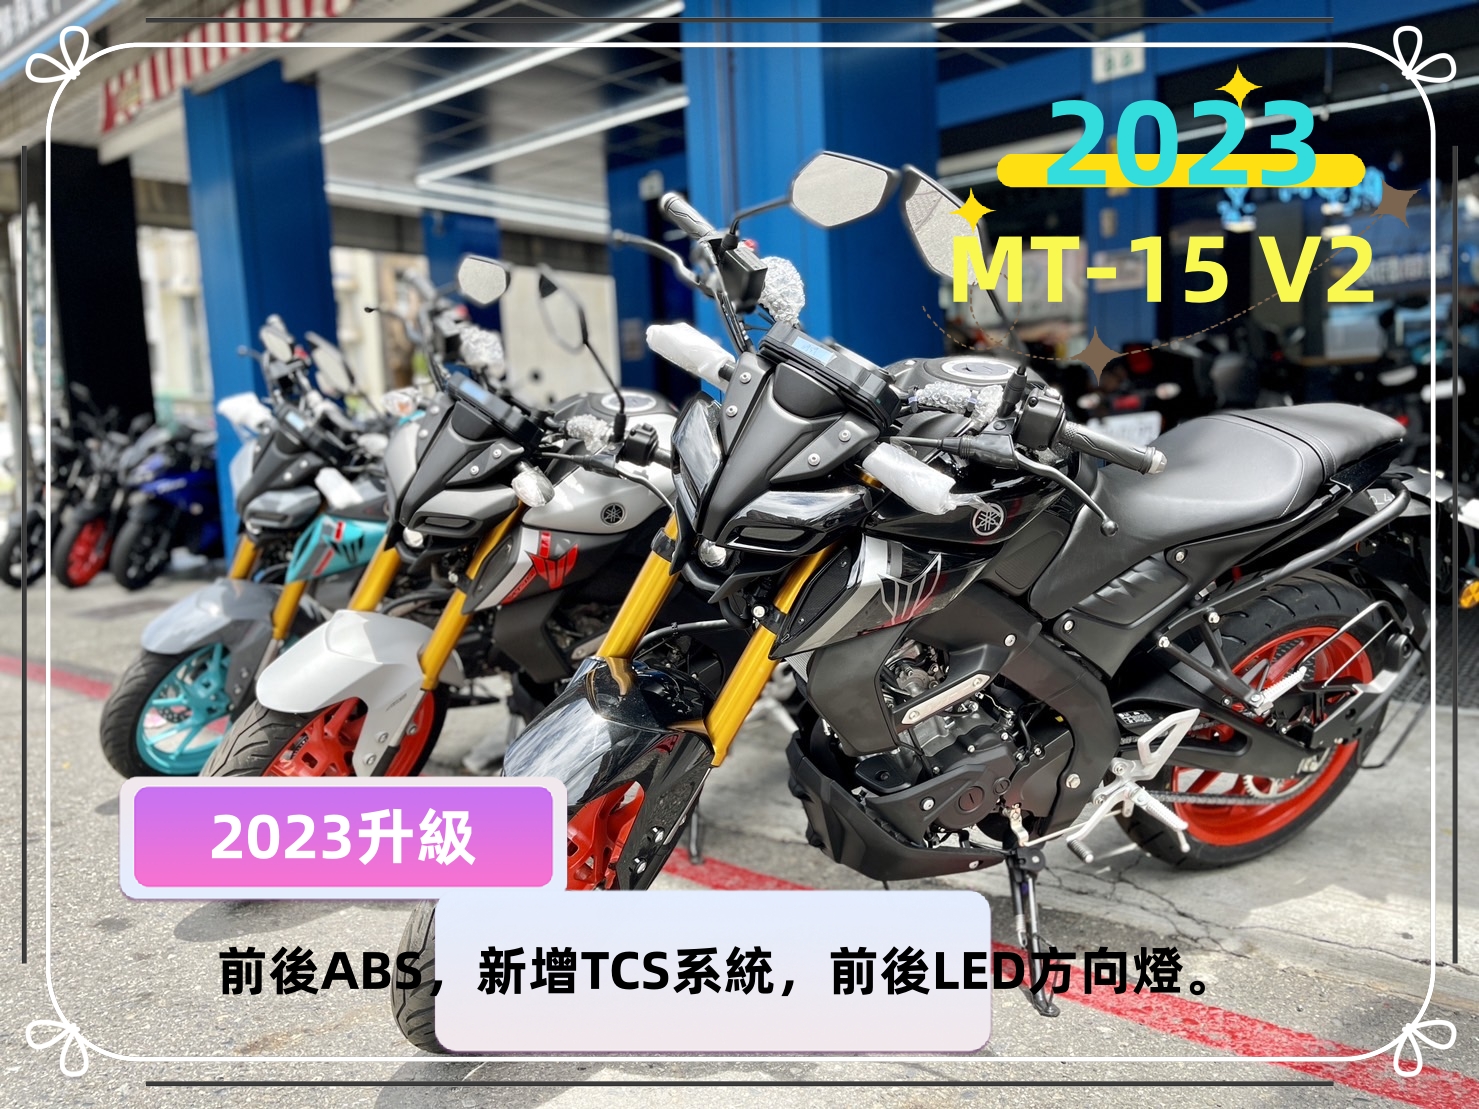 YAMAHA MT-15 V2新車出售中 【售】2023 新車 YAMAHA 街車 MT-15 V2 ABS TCS MT15 | 飛翔國際